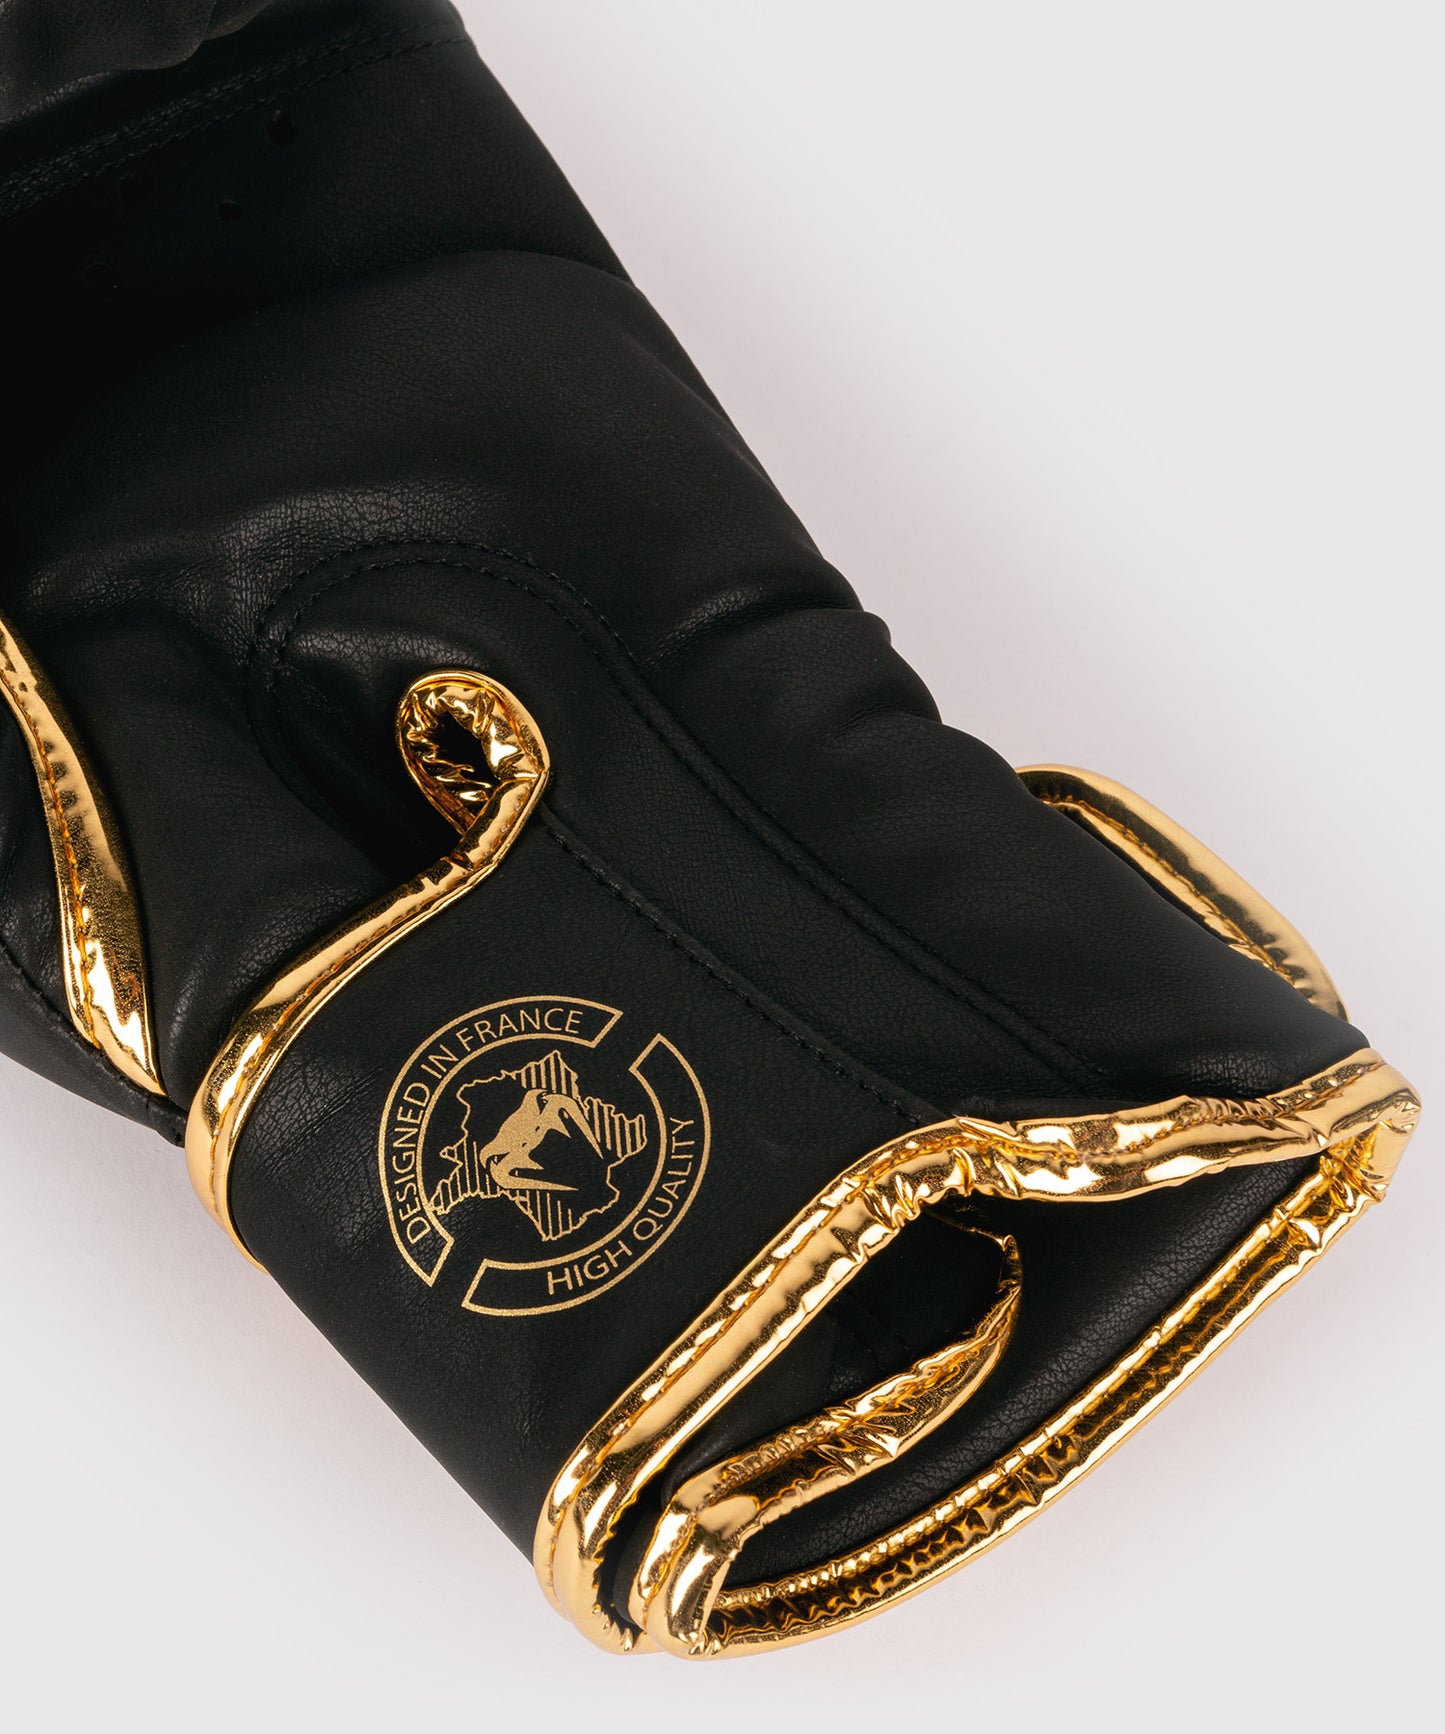 Боксерские перчатки Venum Skull - Черный